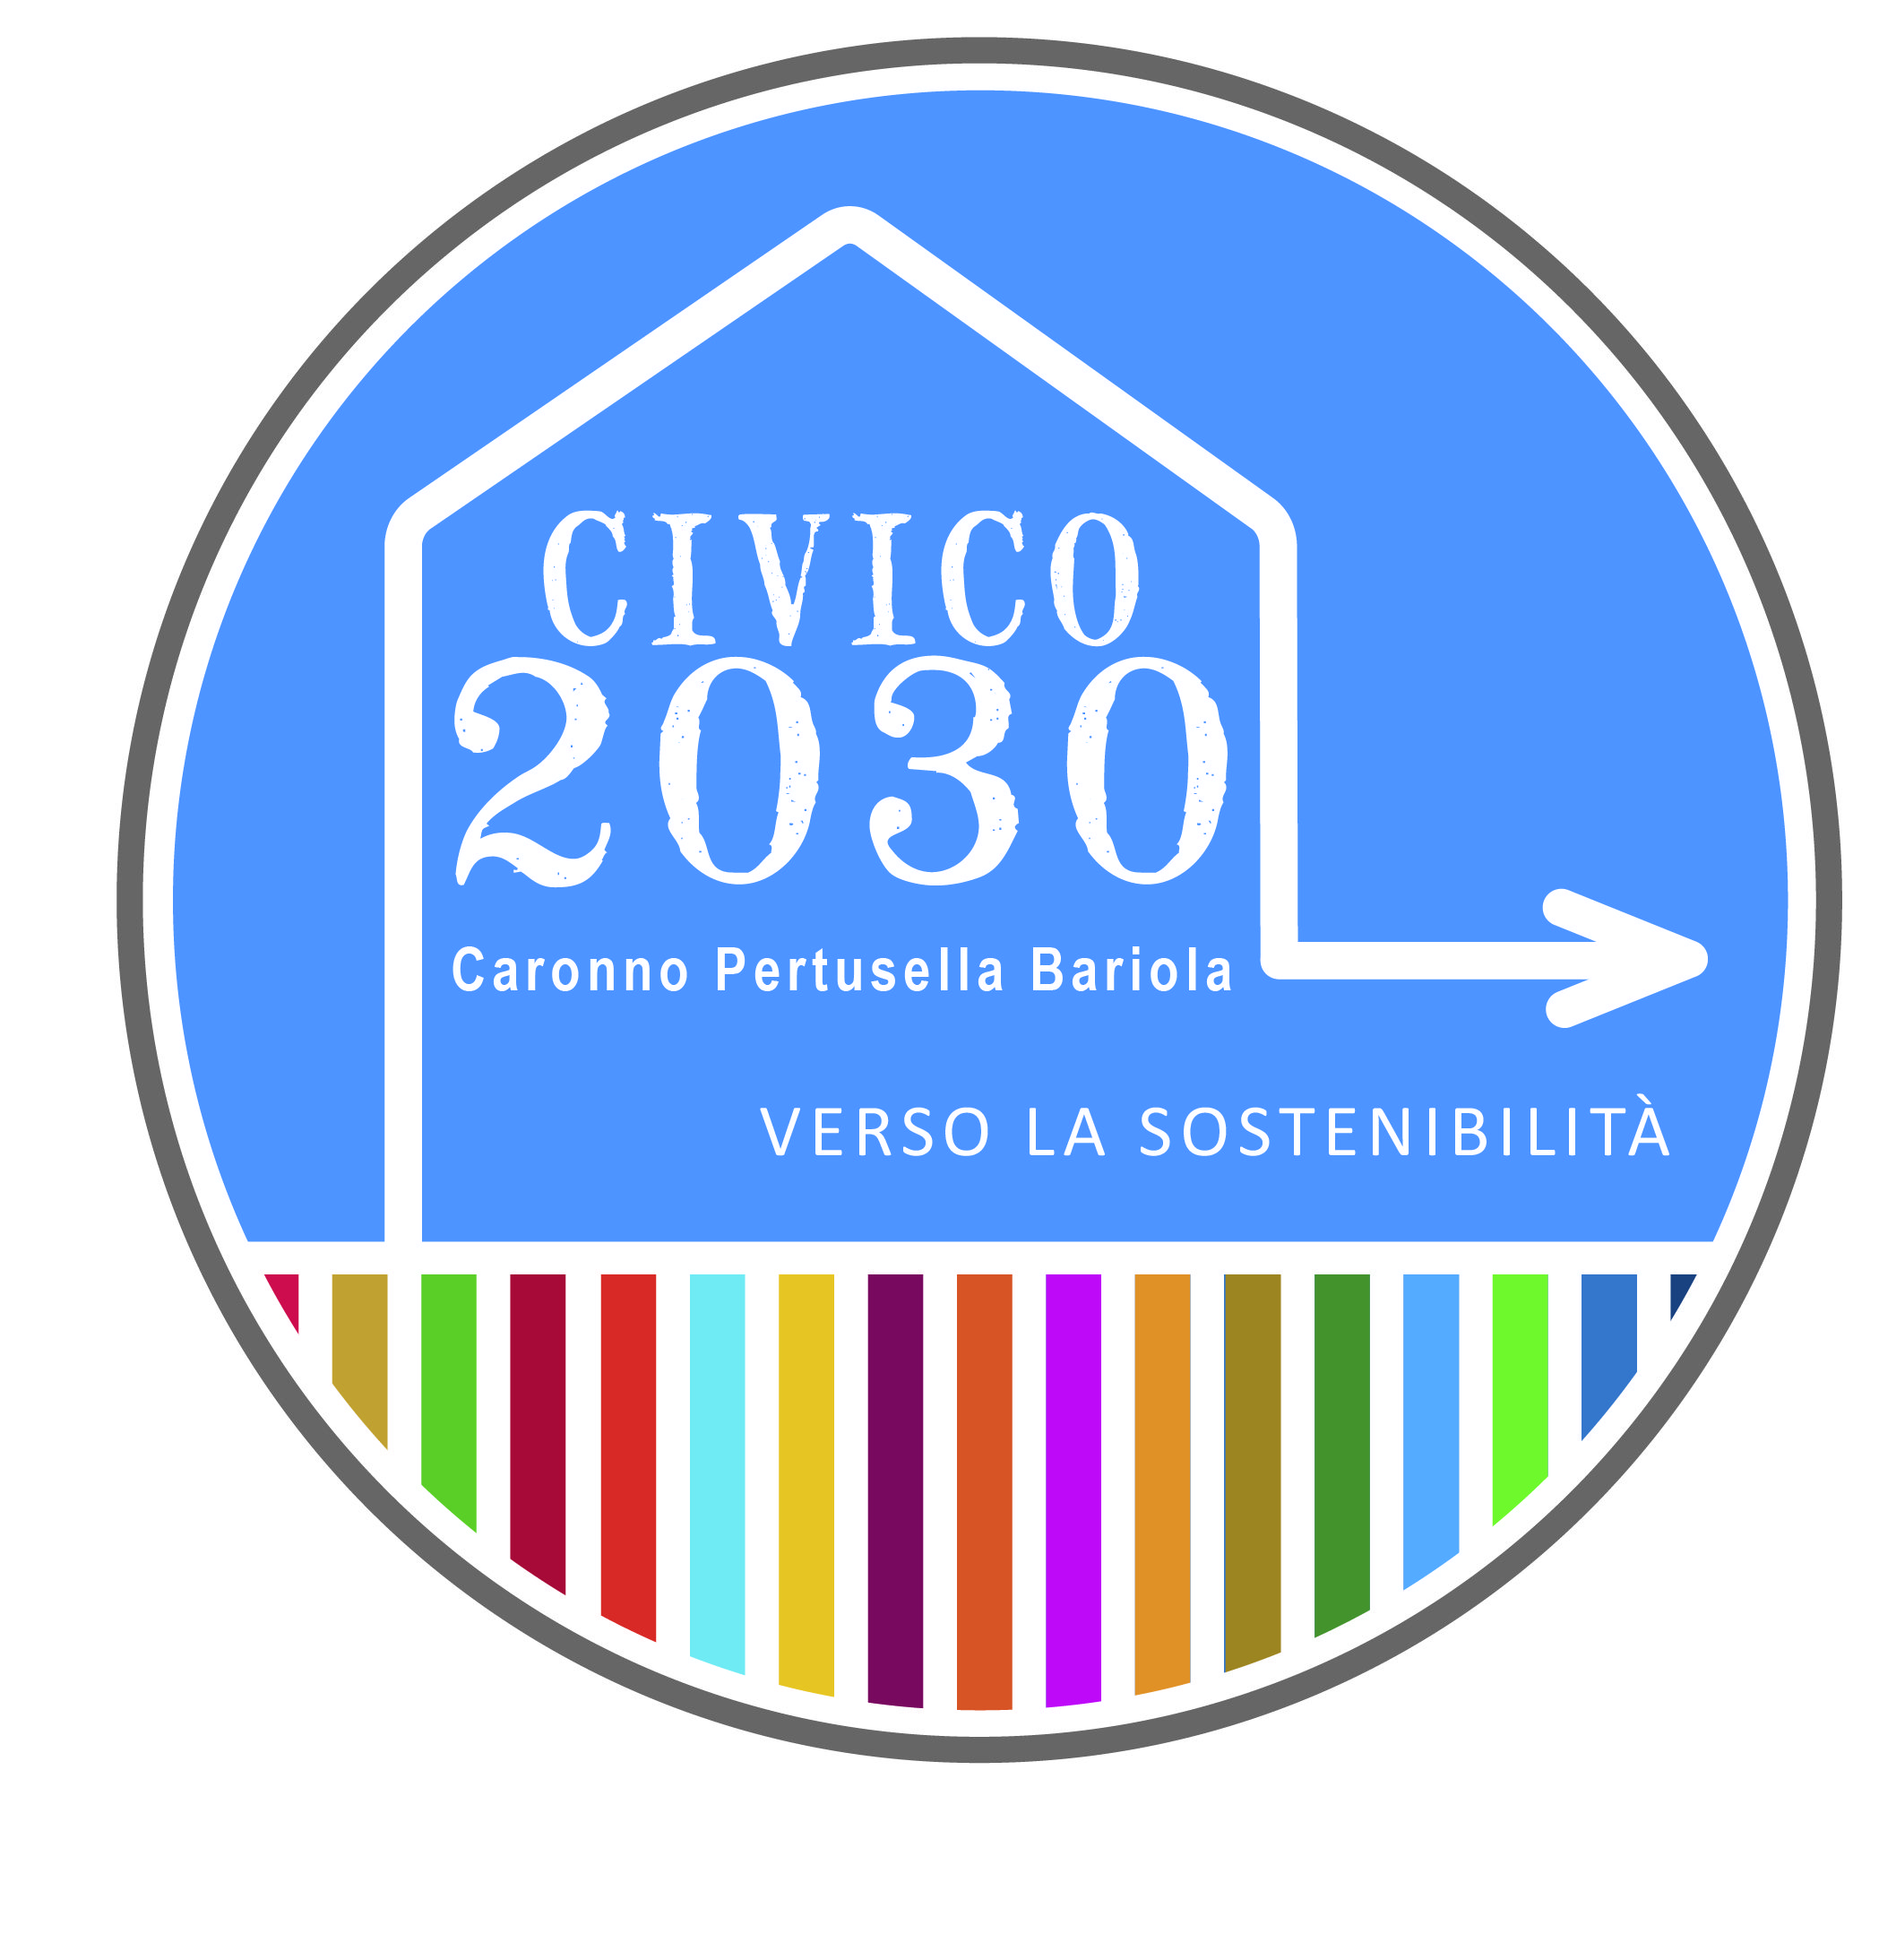 Caronno Pertusella nella Rete dei Comuni Sostenibili: la proposta di Civico 2030